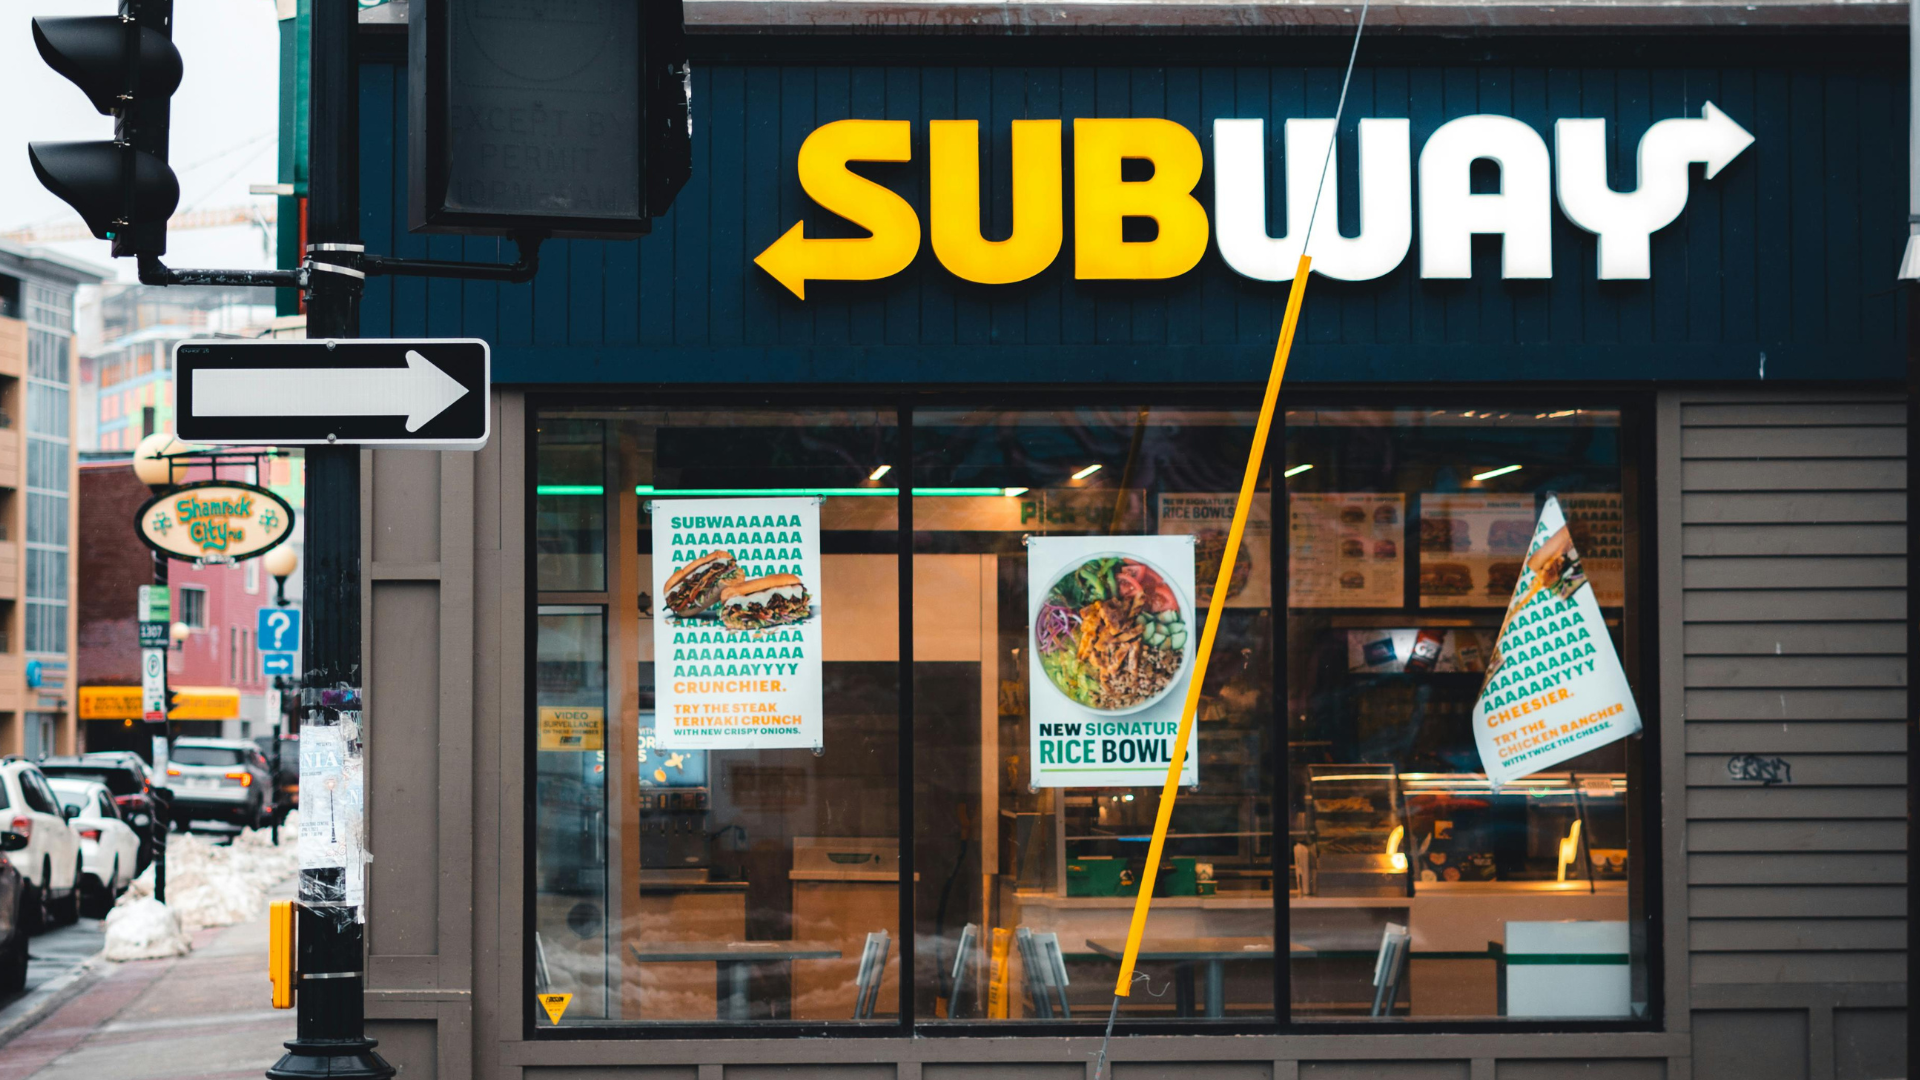 Subway franchise location